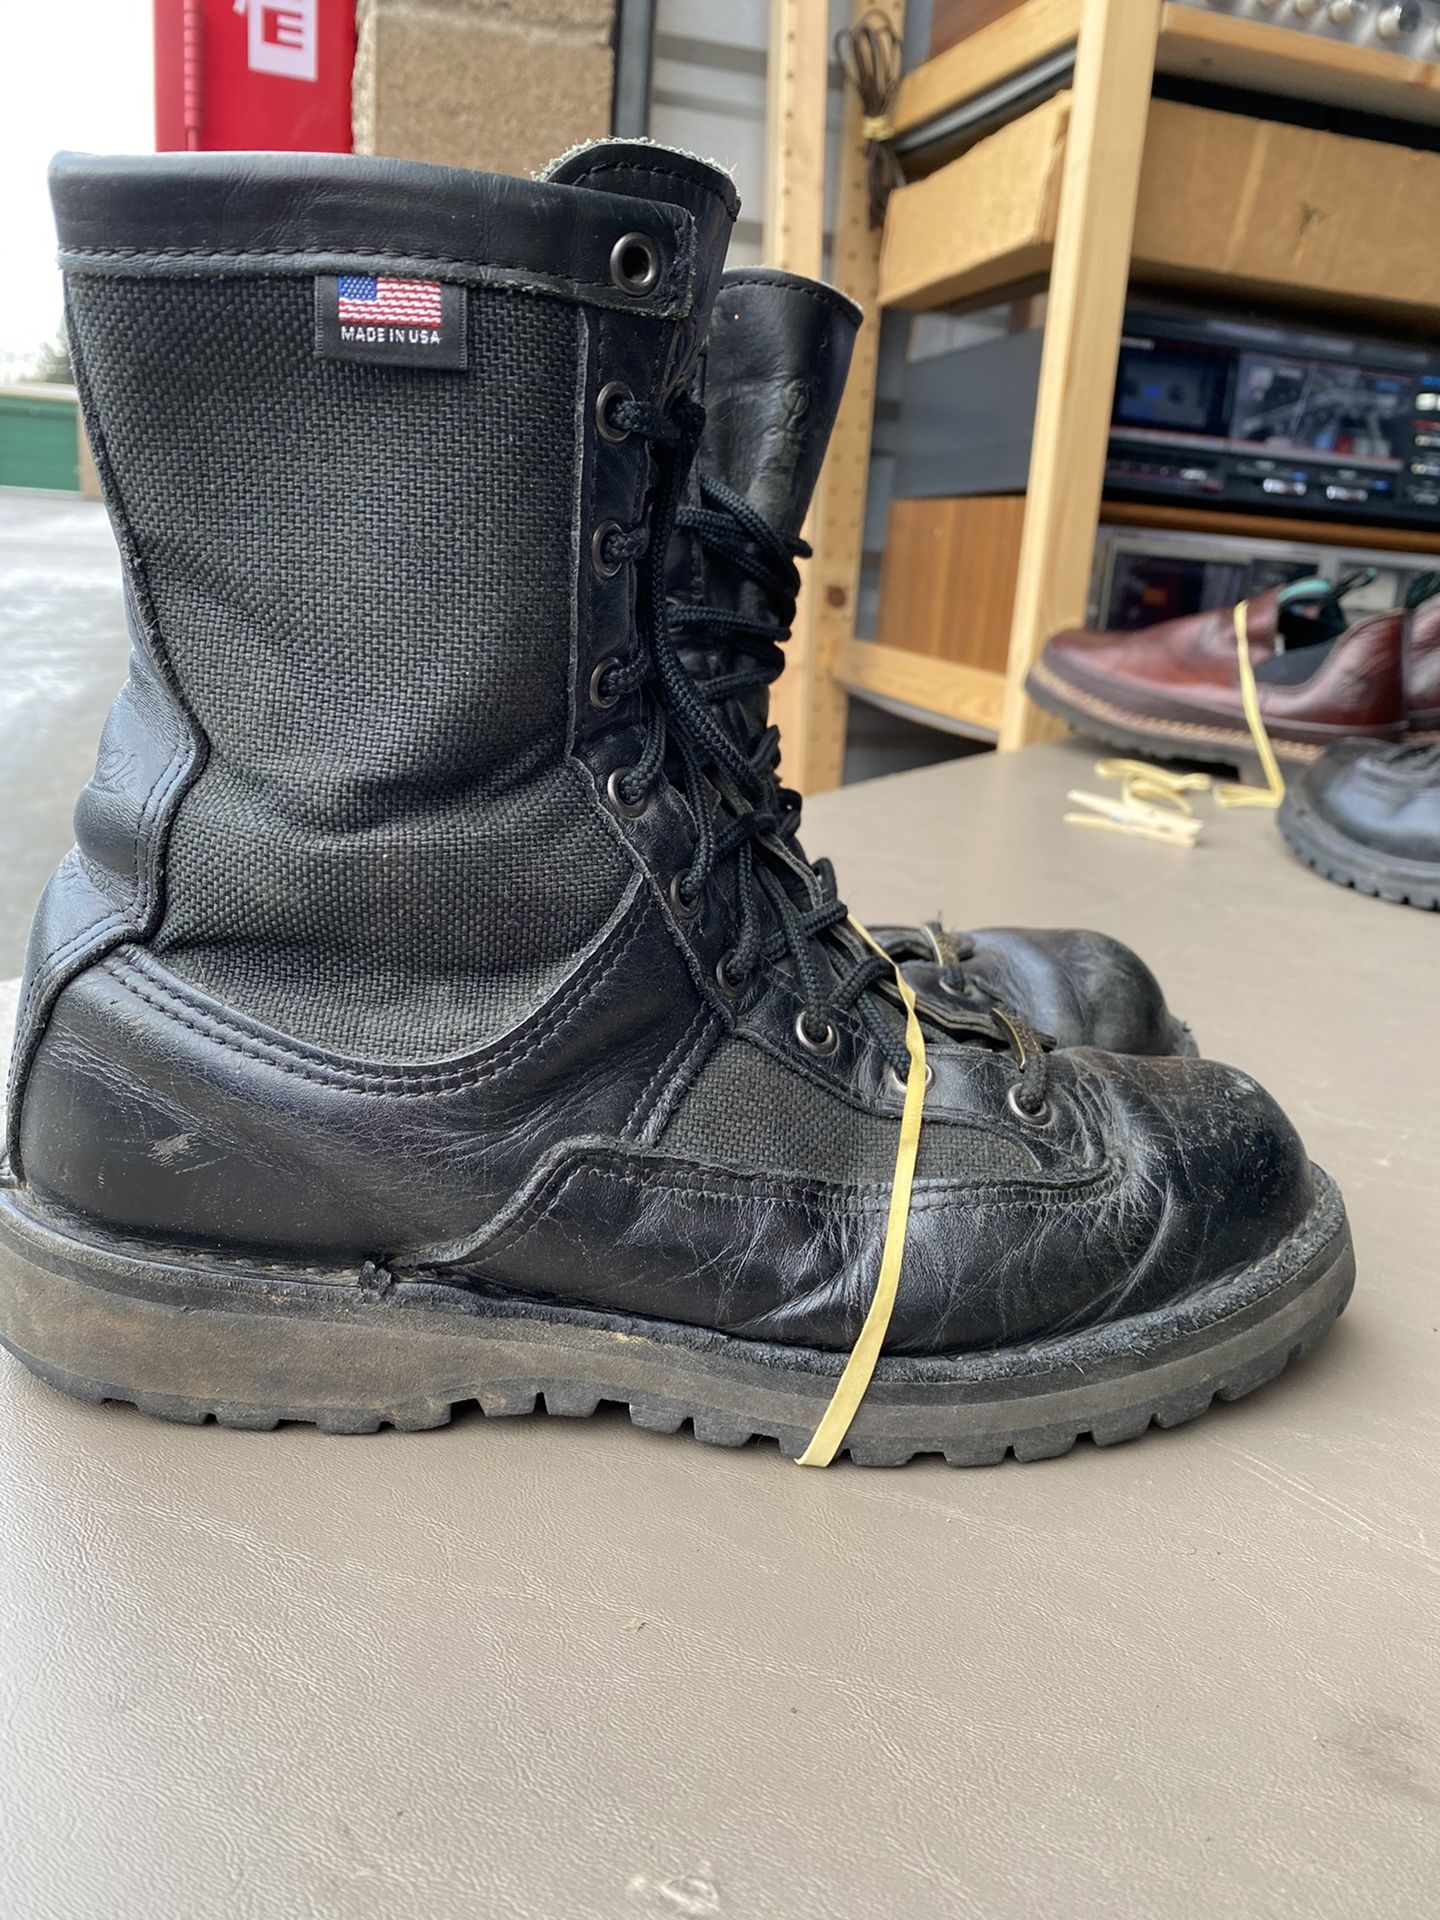 Danner Acadia 200g sz 7 work boot non steel